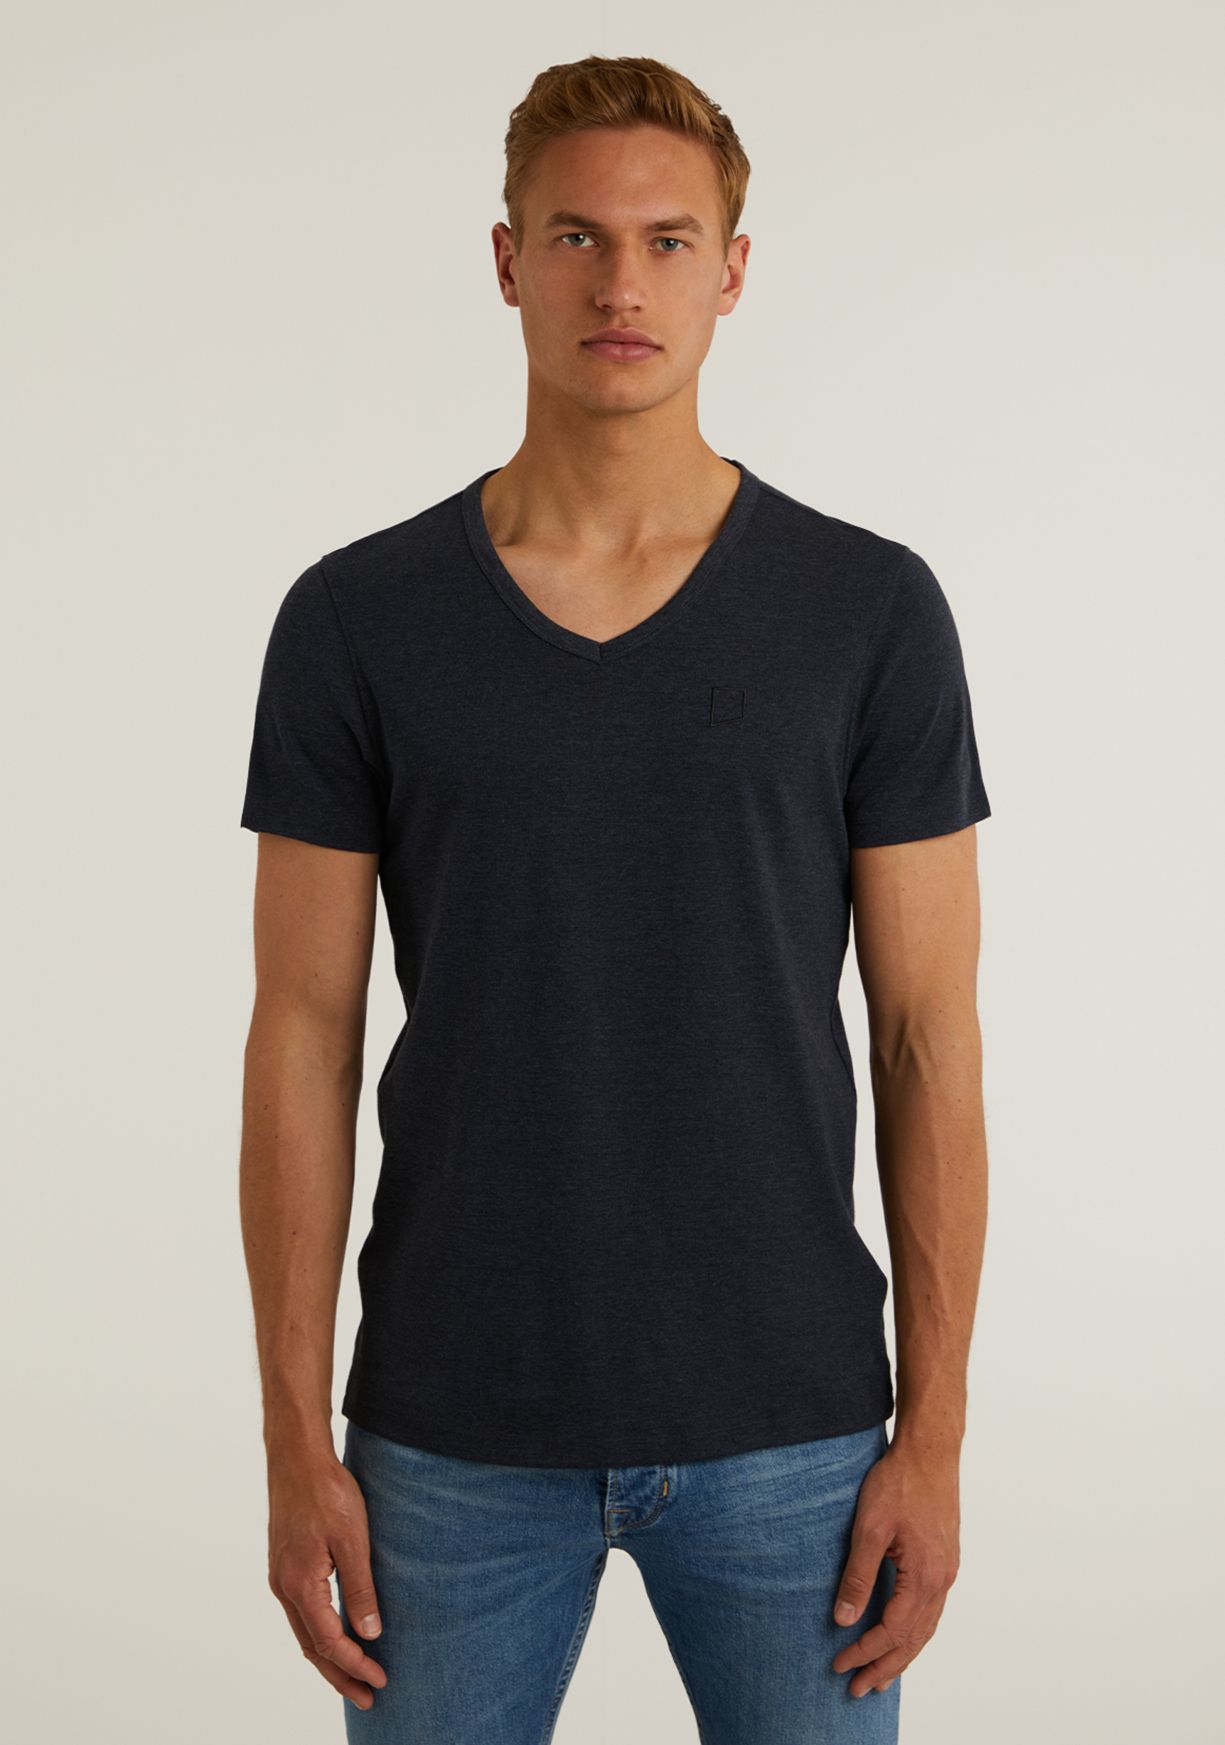 Marca ESPRITESPRIT T-Shirt Uomo 